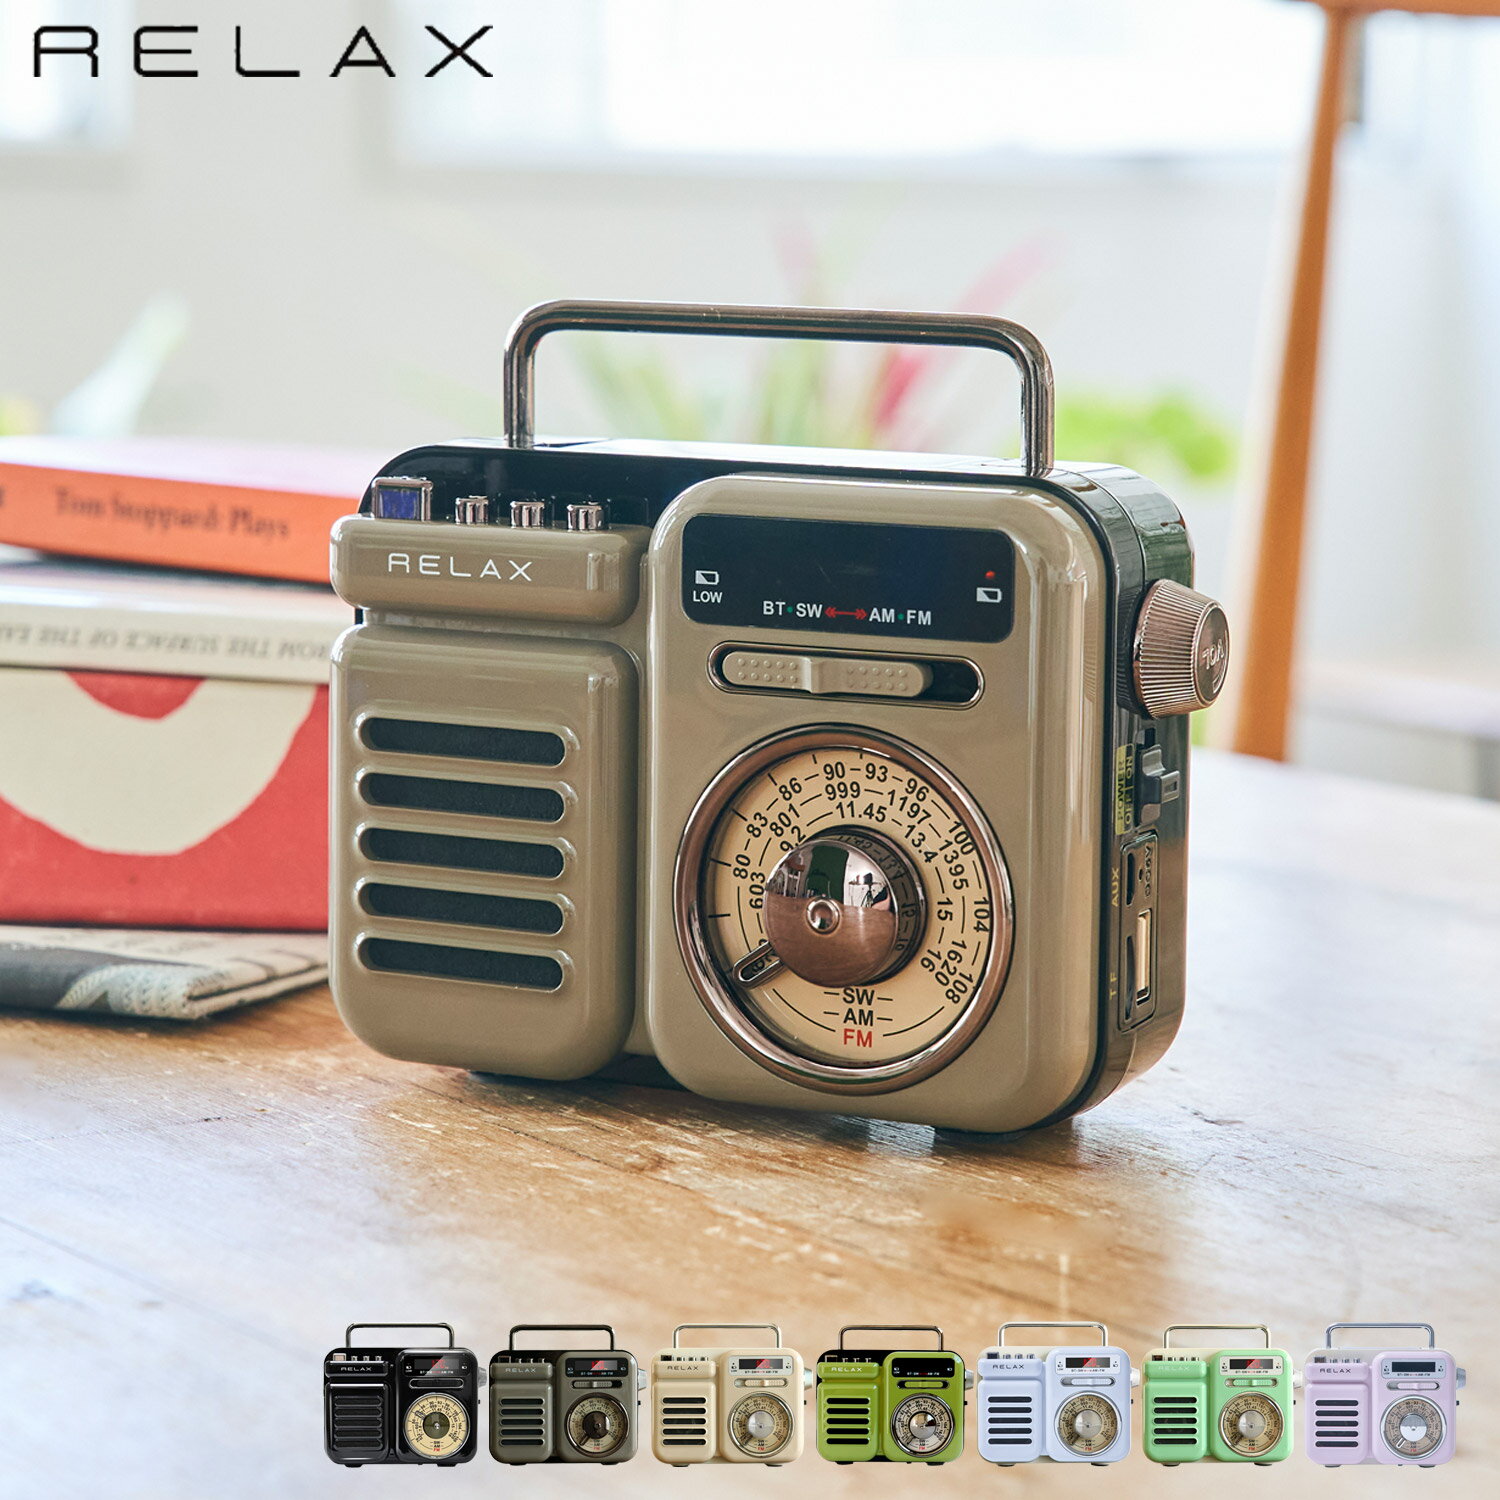 リラックス RELAX マルチ レトロ ラジオ 小型 携帯 防災用品 ライト アラーム SOS機能 モバイルバッテリー 音楽再生 時計 スピーカー RE096 アウトドア